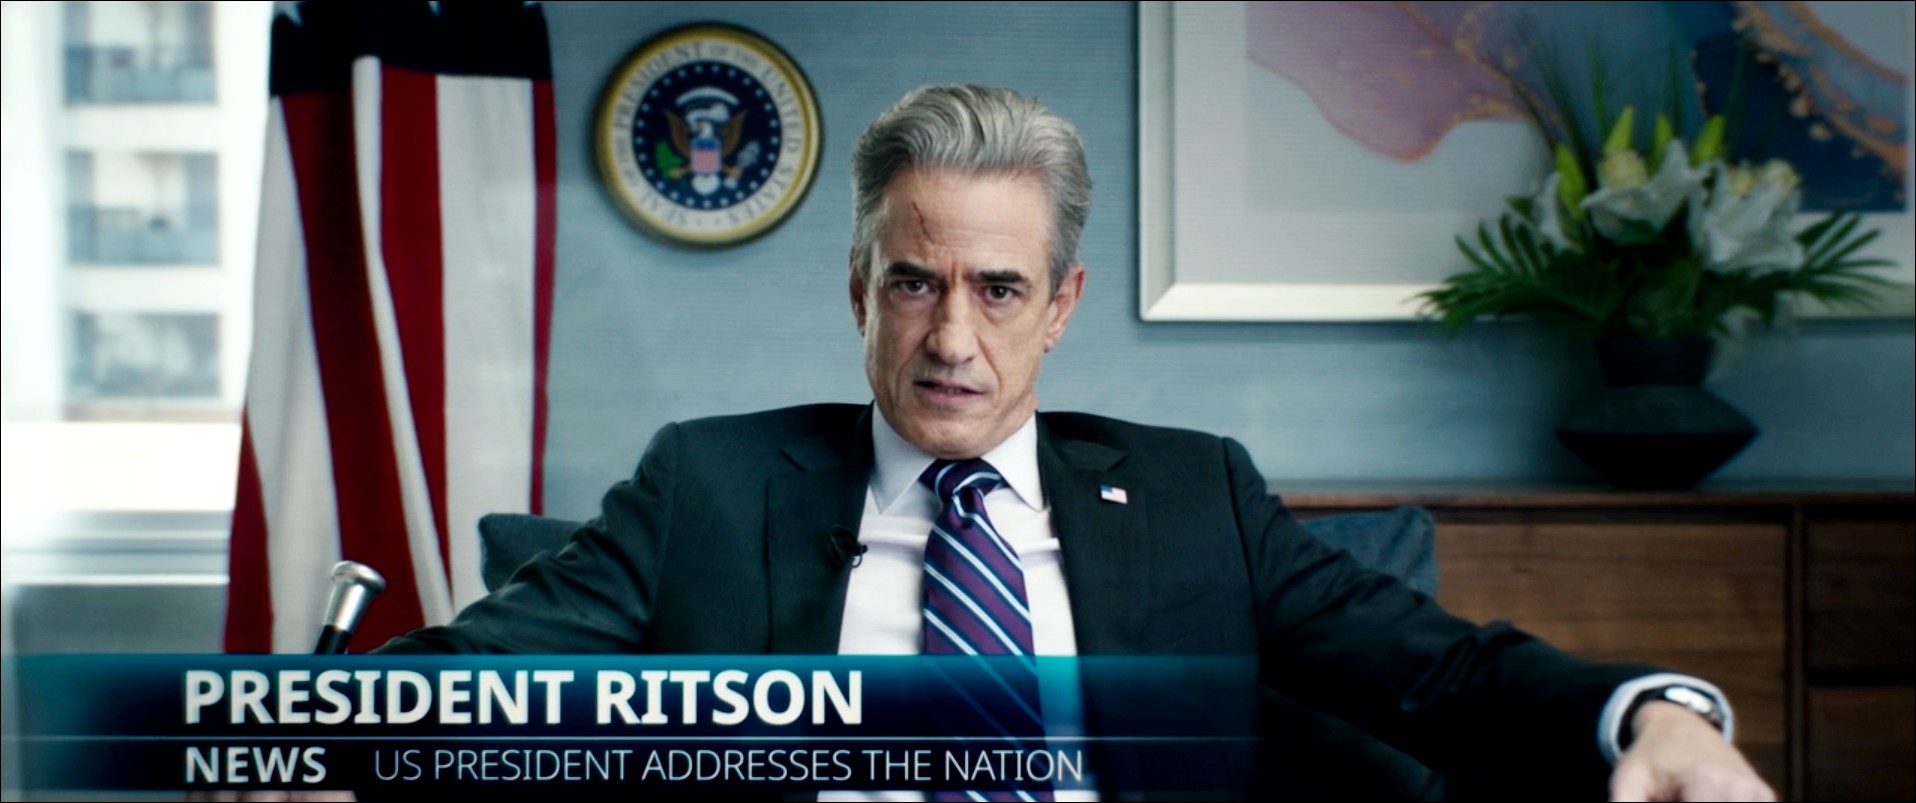 Le Président Ritson, série MARVEL Secret Invasion